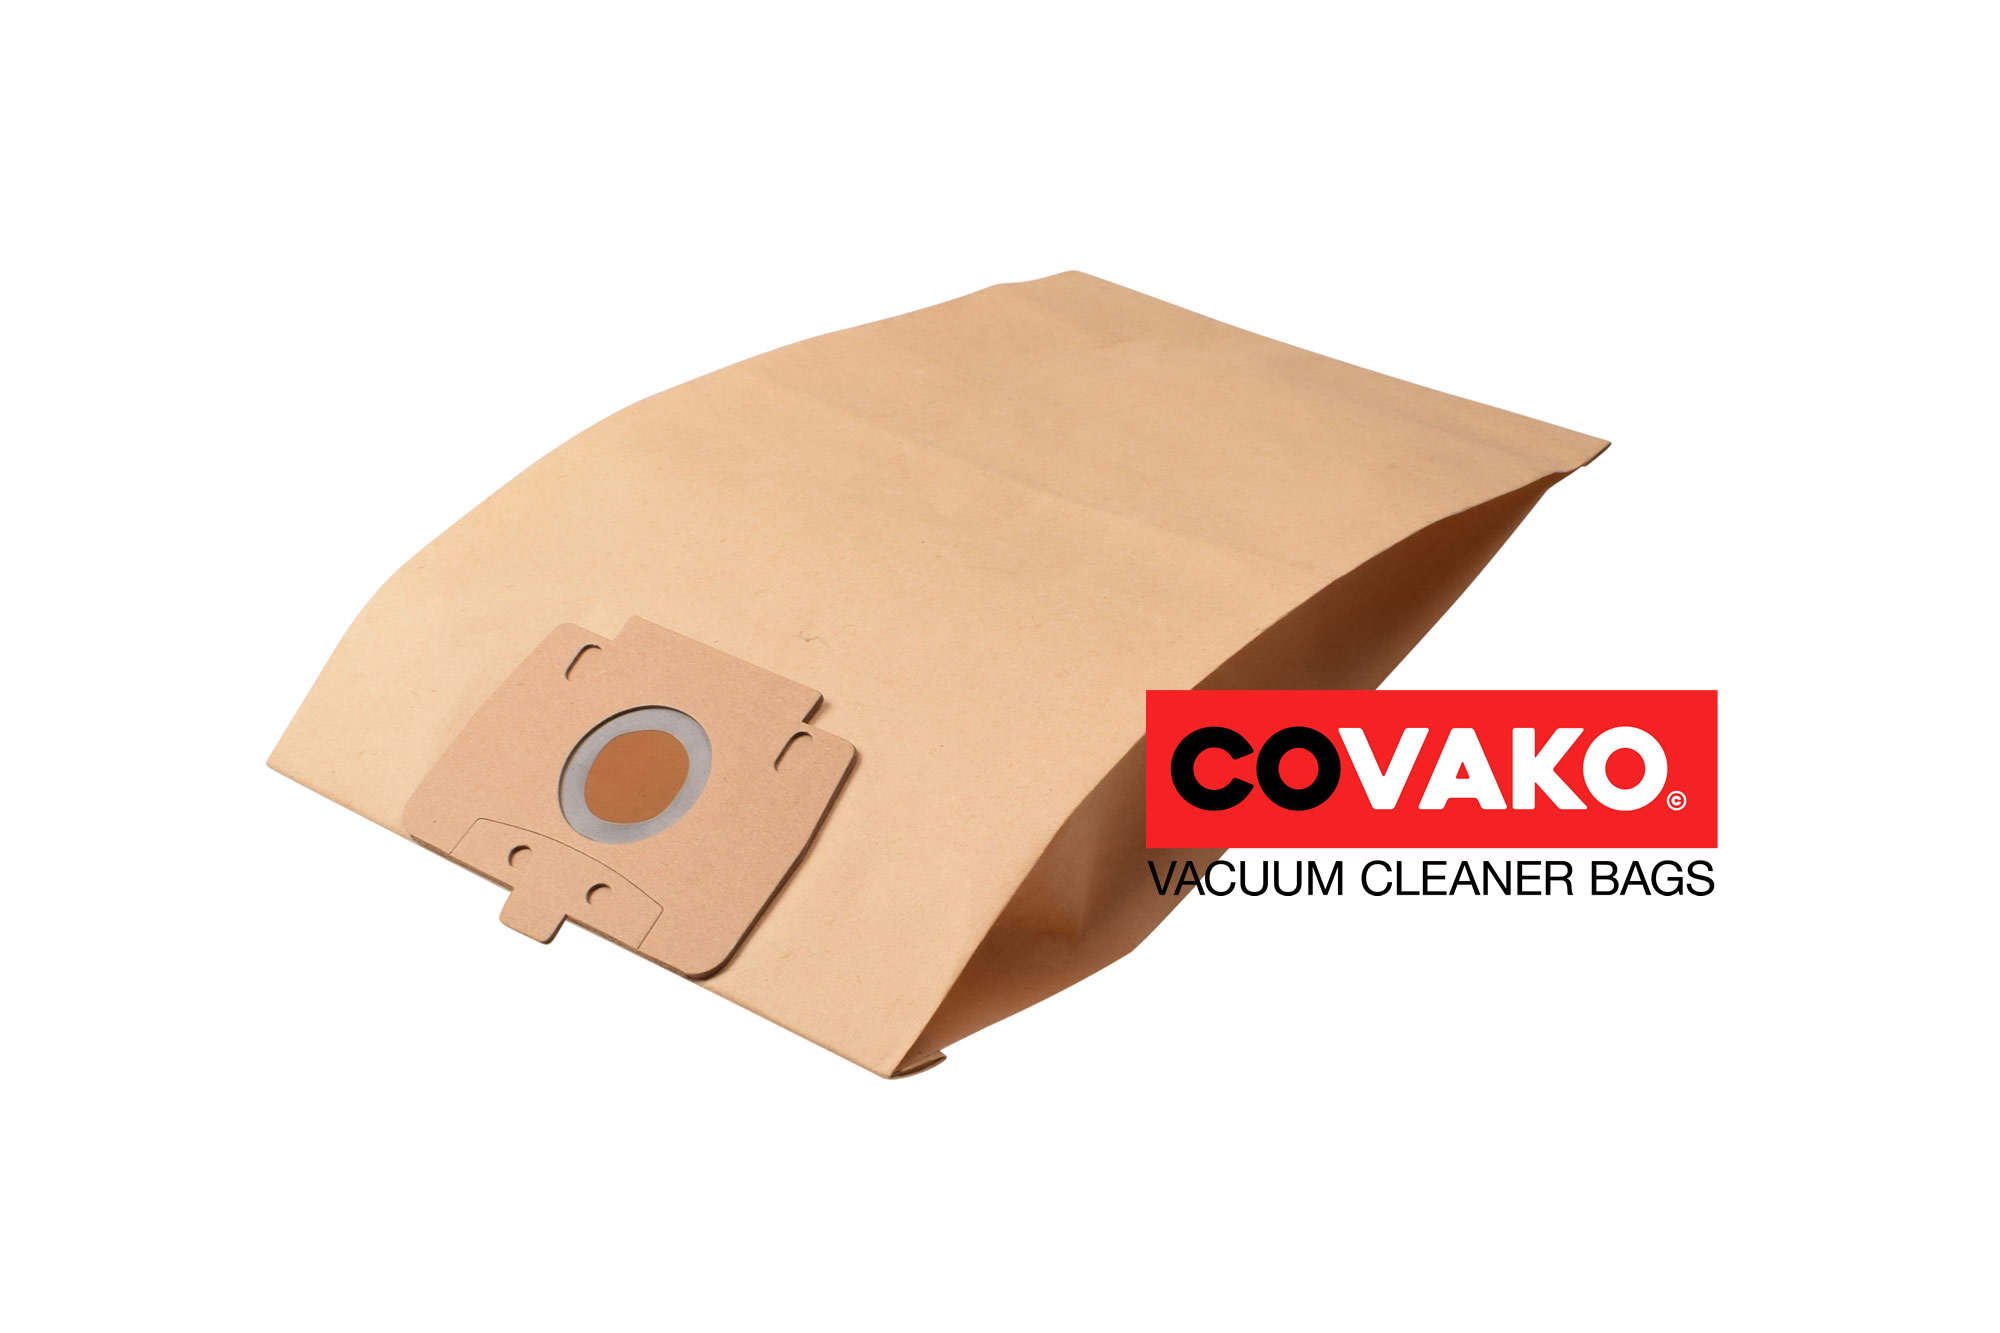 Columbus M 157 / Paper - Columbus vacuum cleaner bags